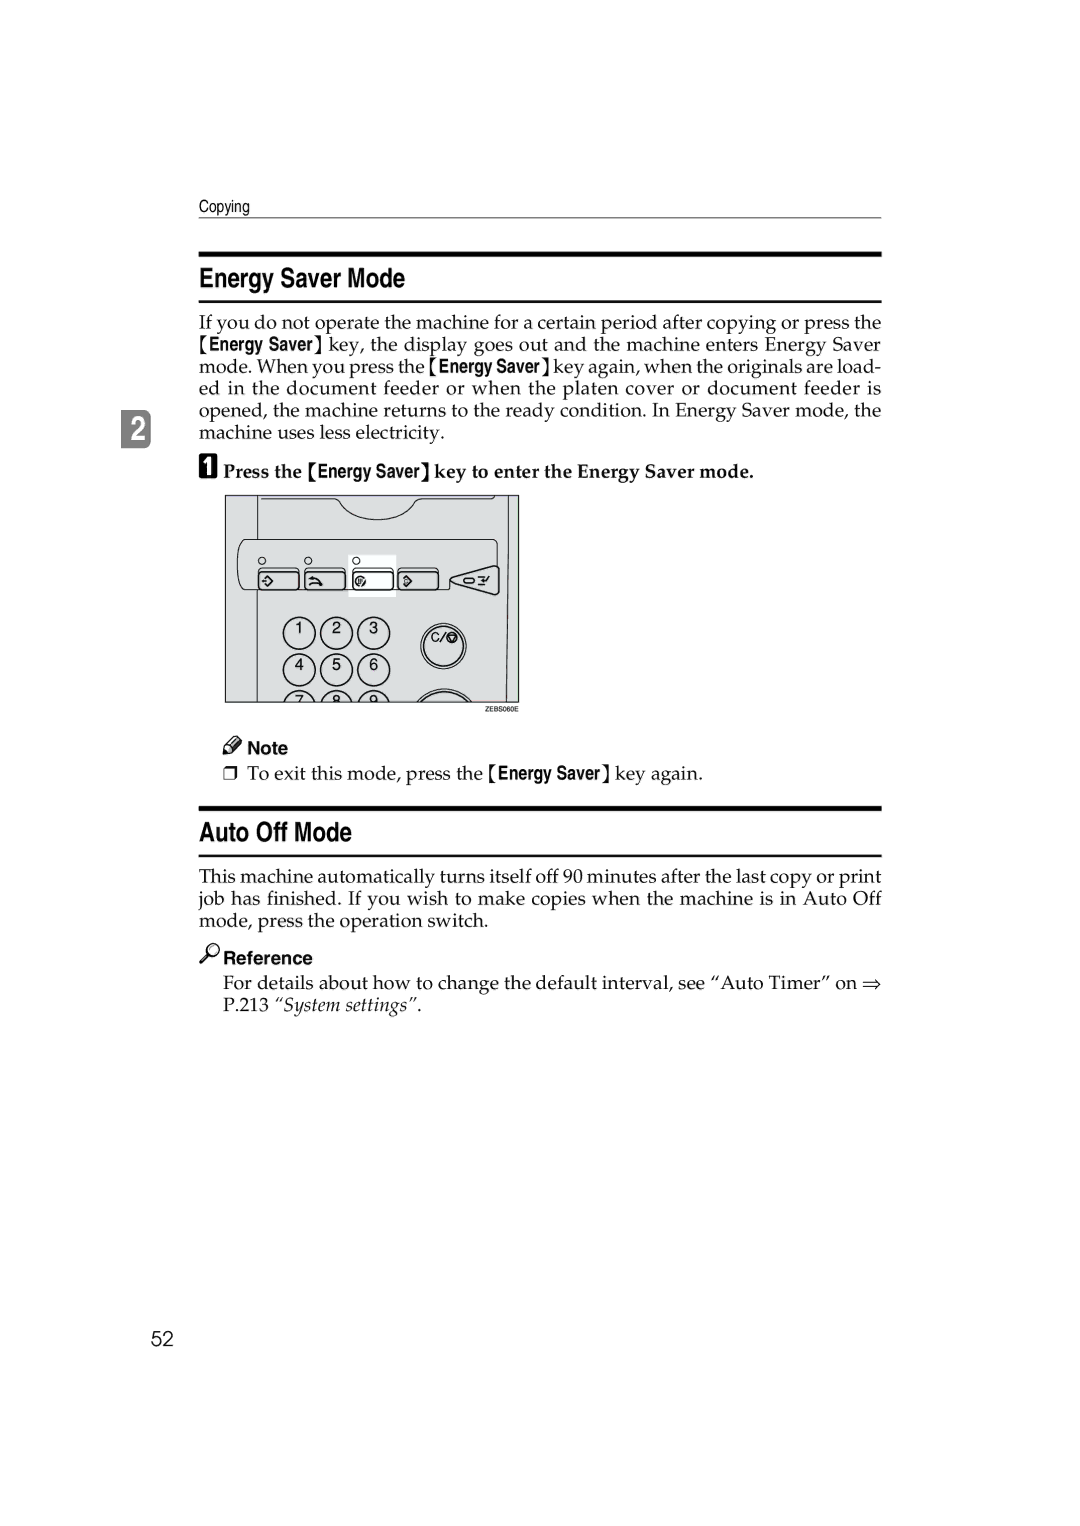 Ricoh 6513 manual Energy Saver Mode, Auto Off Mode, Press the Energy Saver key to enter the Energy Saver mode 